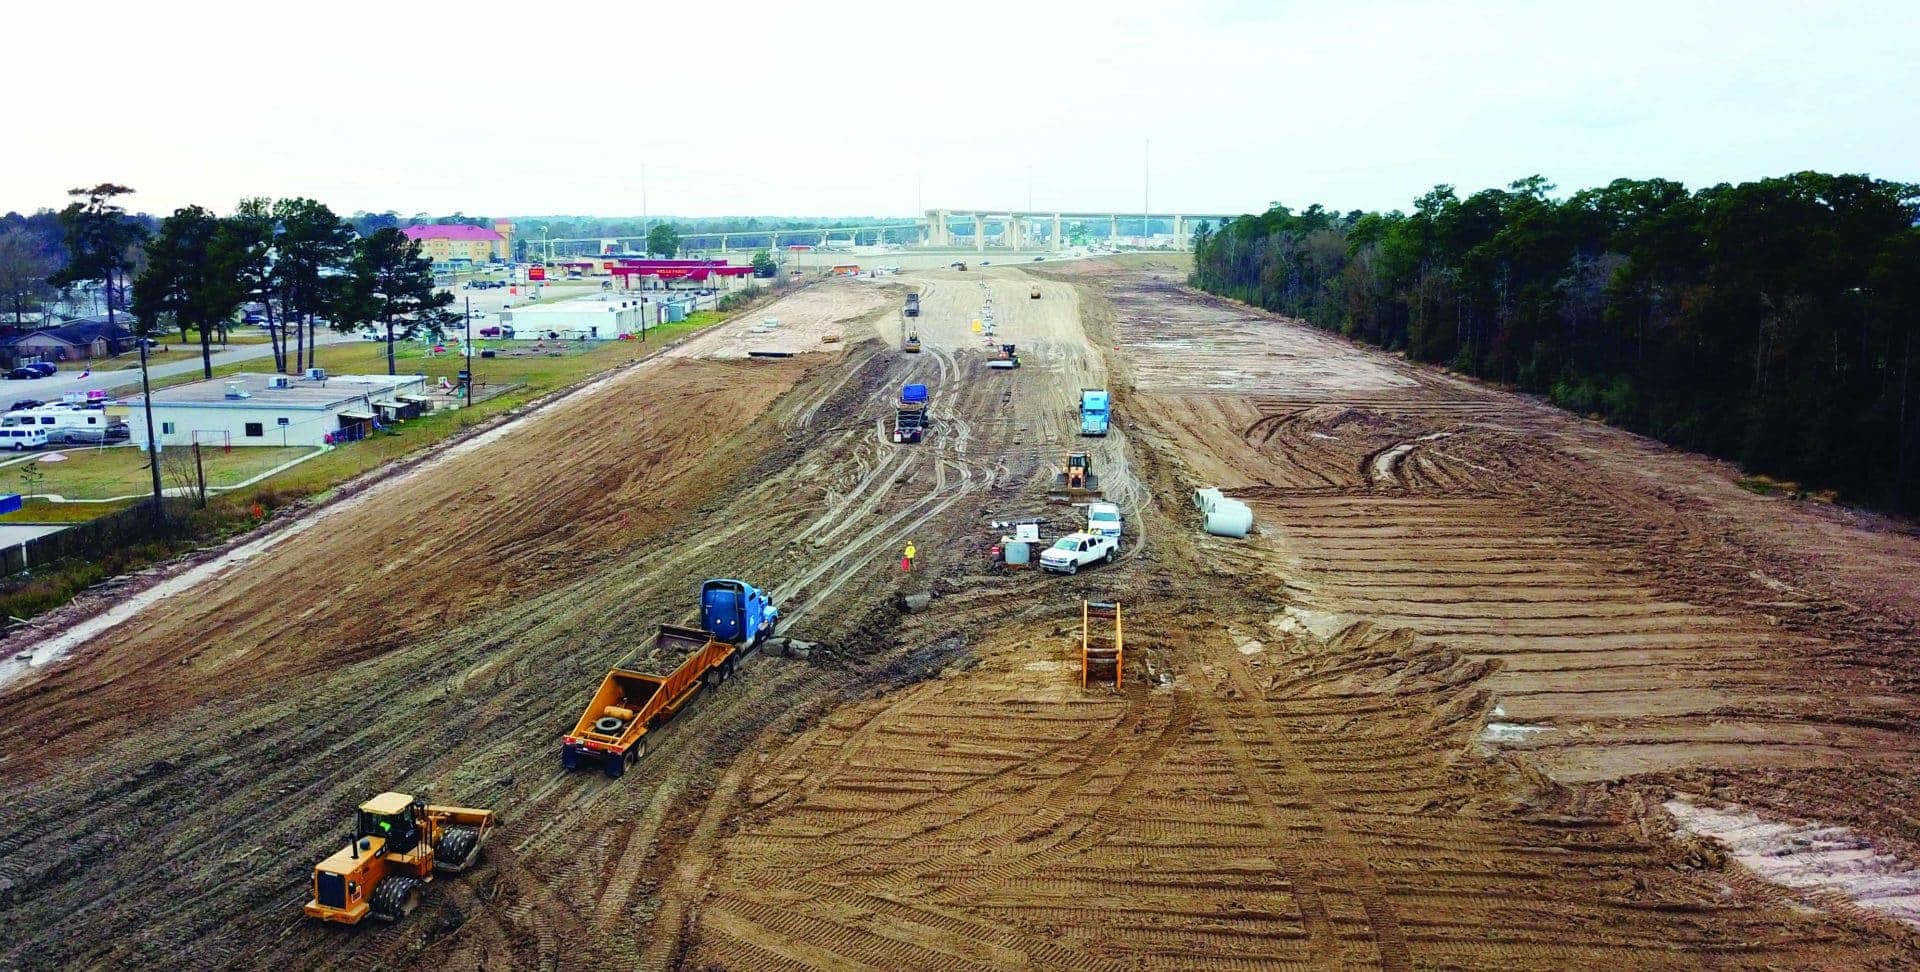 Continúan las obras del proyecto de la autopista SH 99 Grand Parkway cerca de Houston